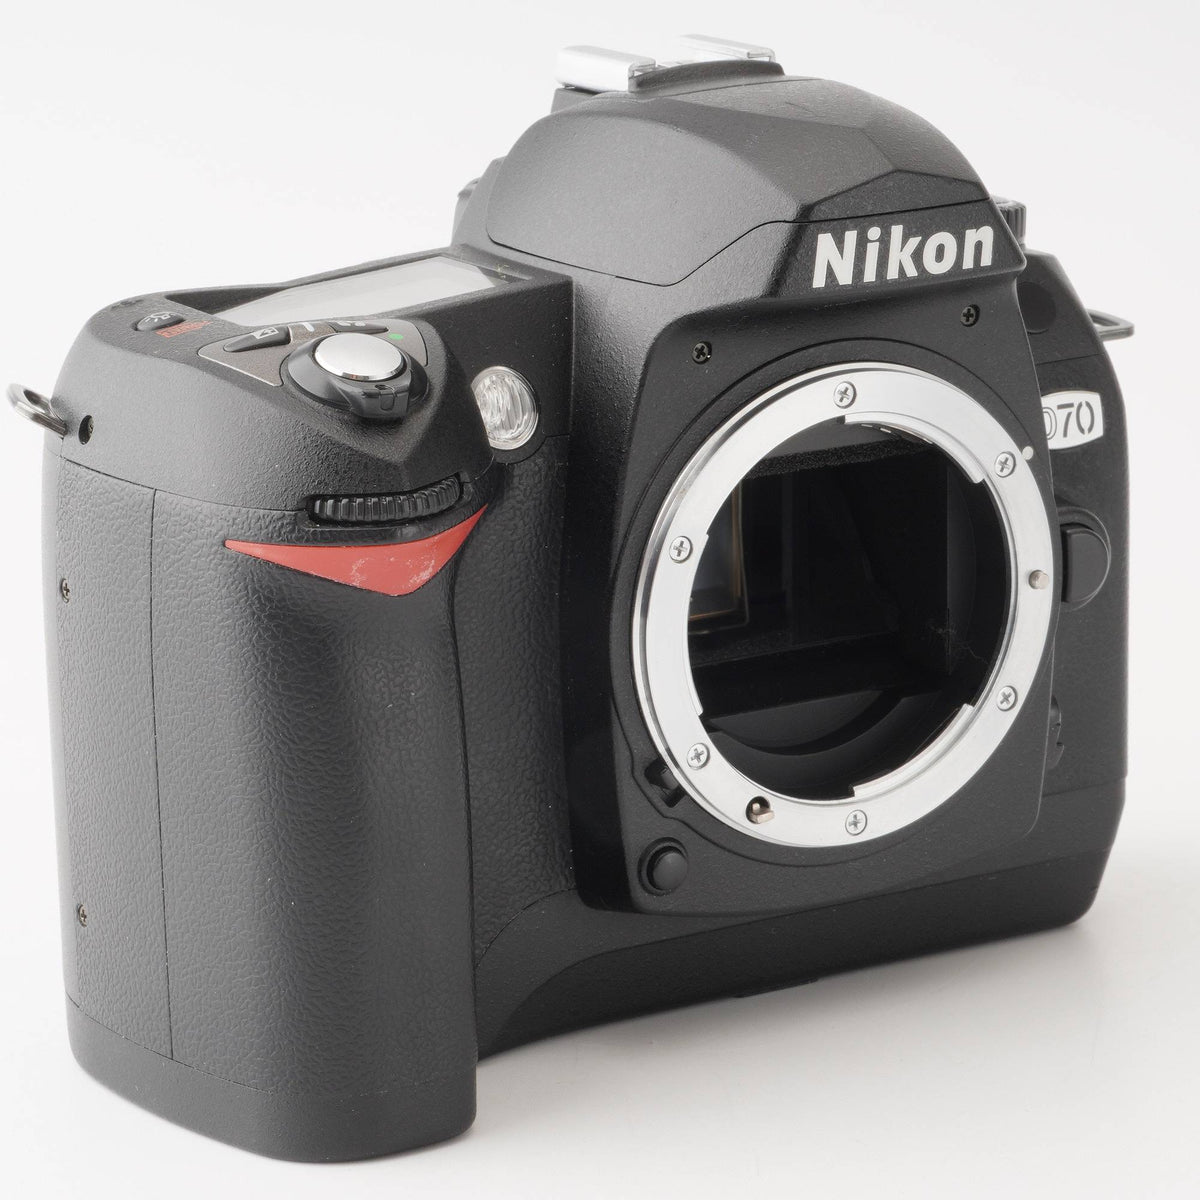 ニコン Nikon D70 デジタル一眼レフカメラ – Natural Camera